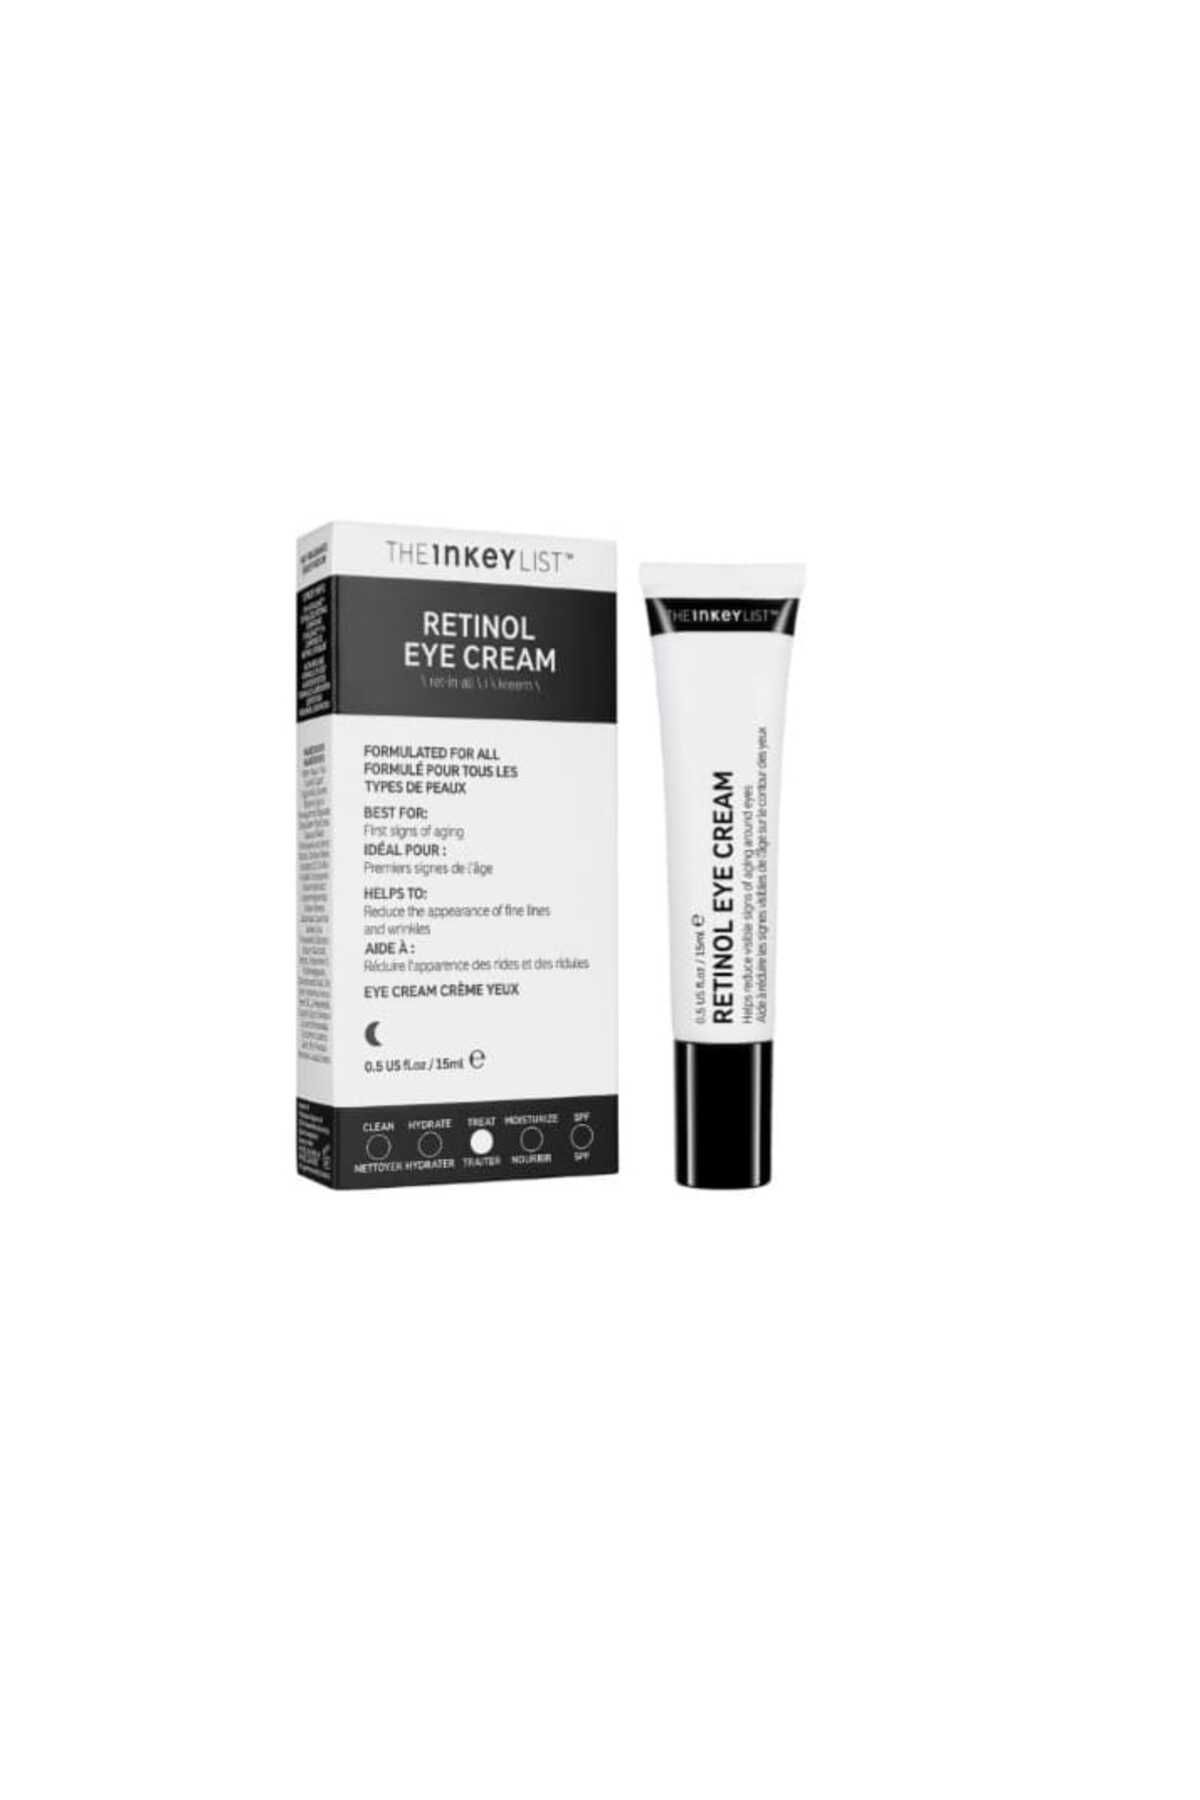 THE INKEY LIST Retinol Eye Cream - Göz Kremi 15 ml